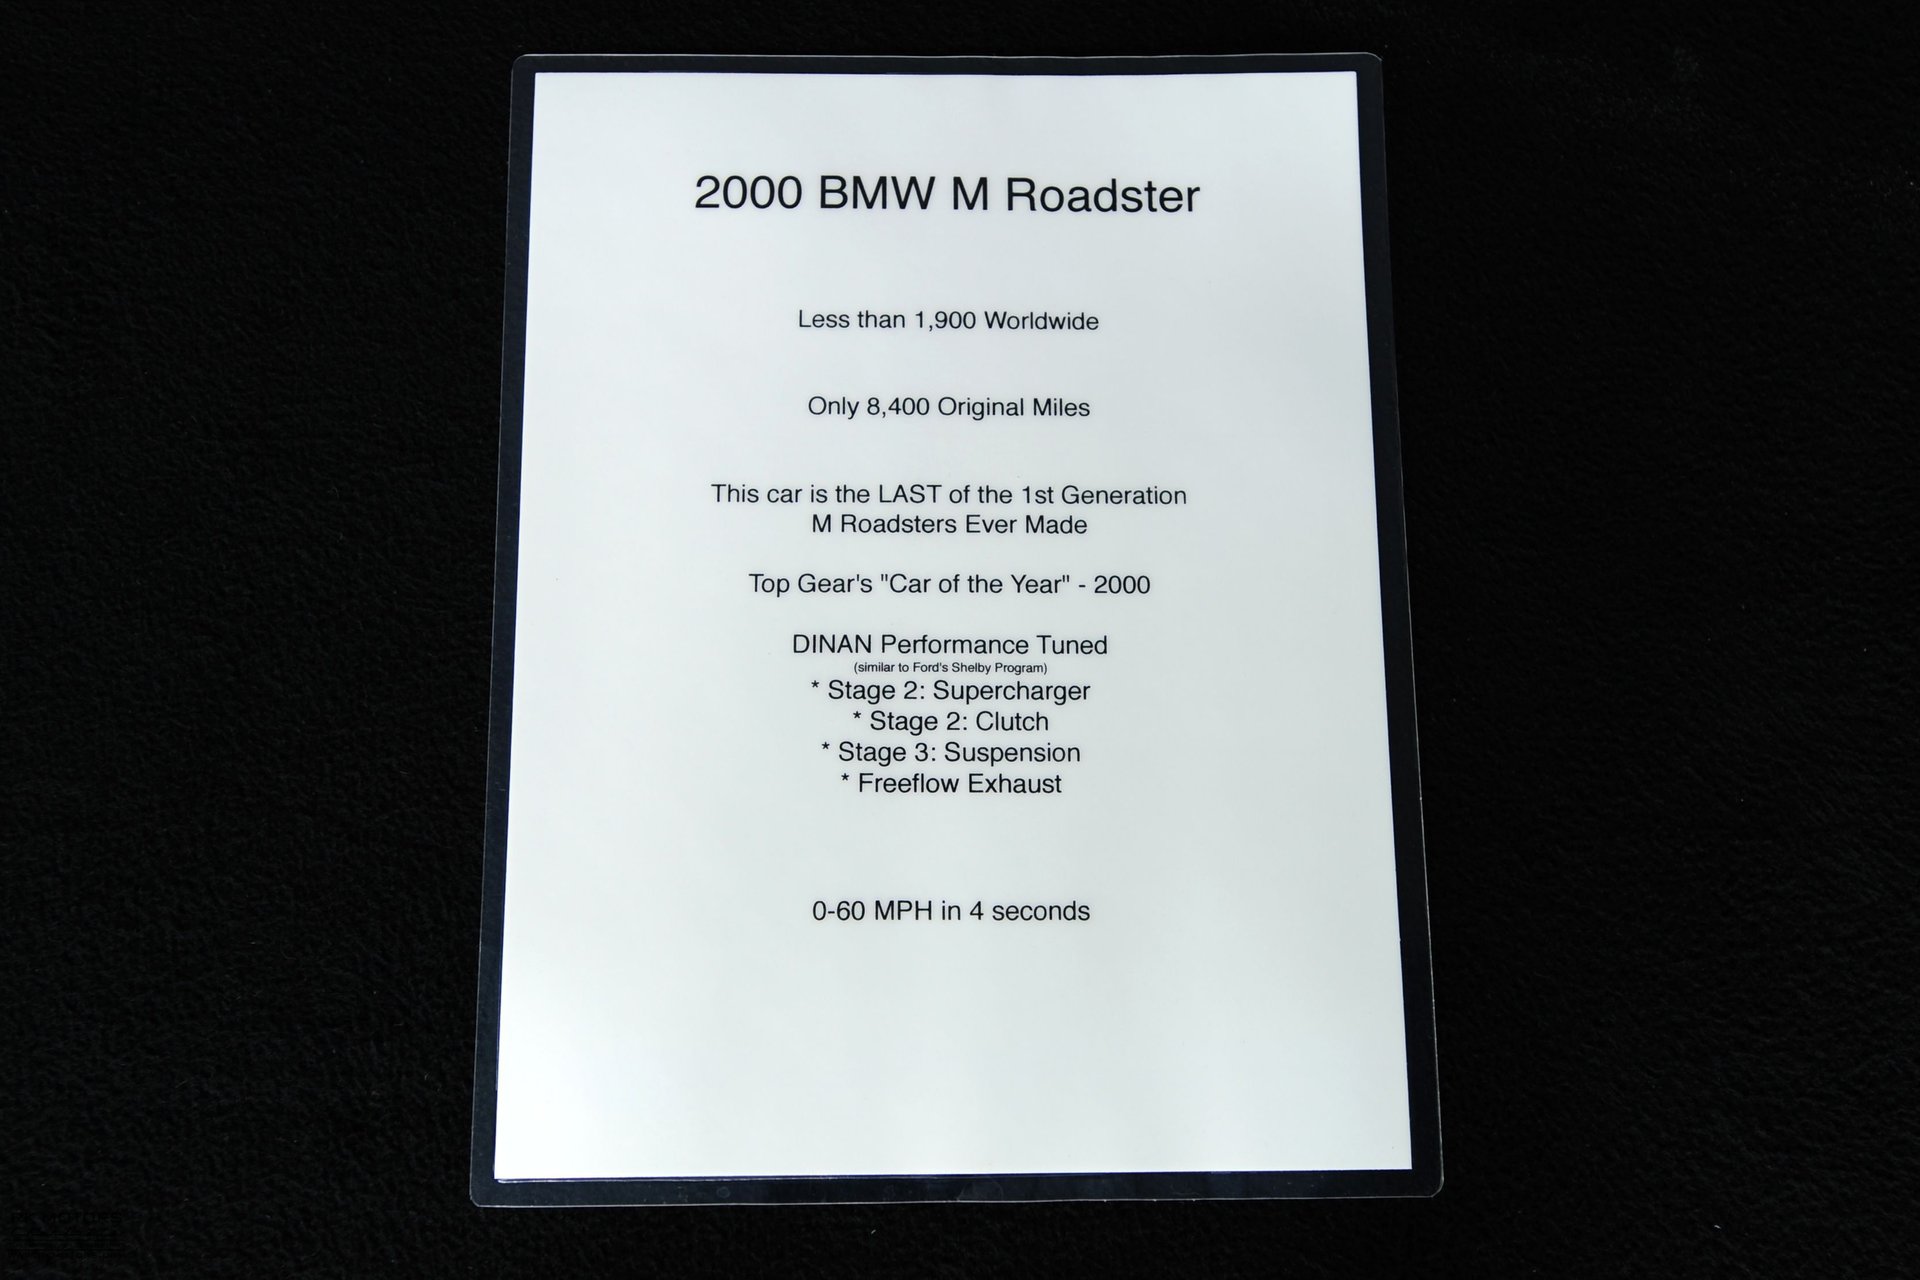 For Sale 2000 BMW Z3